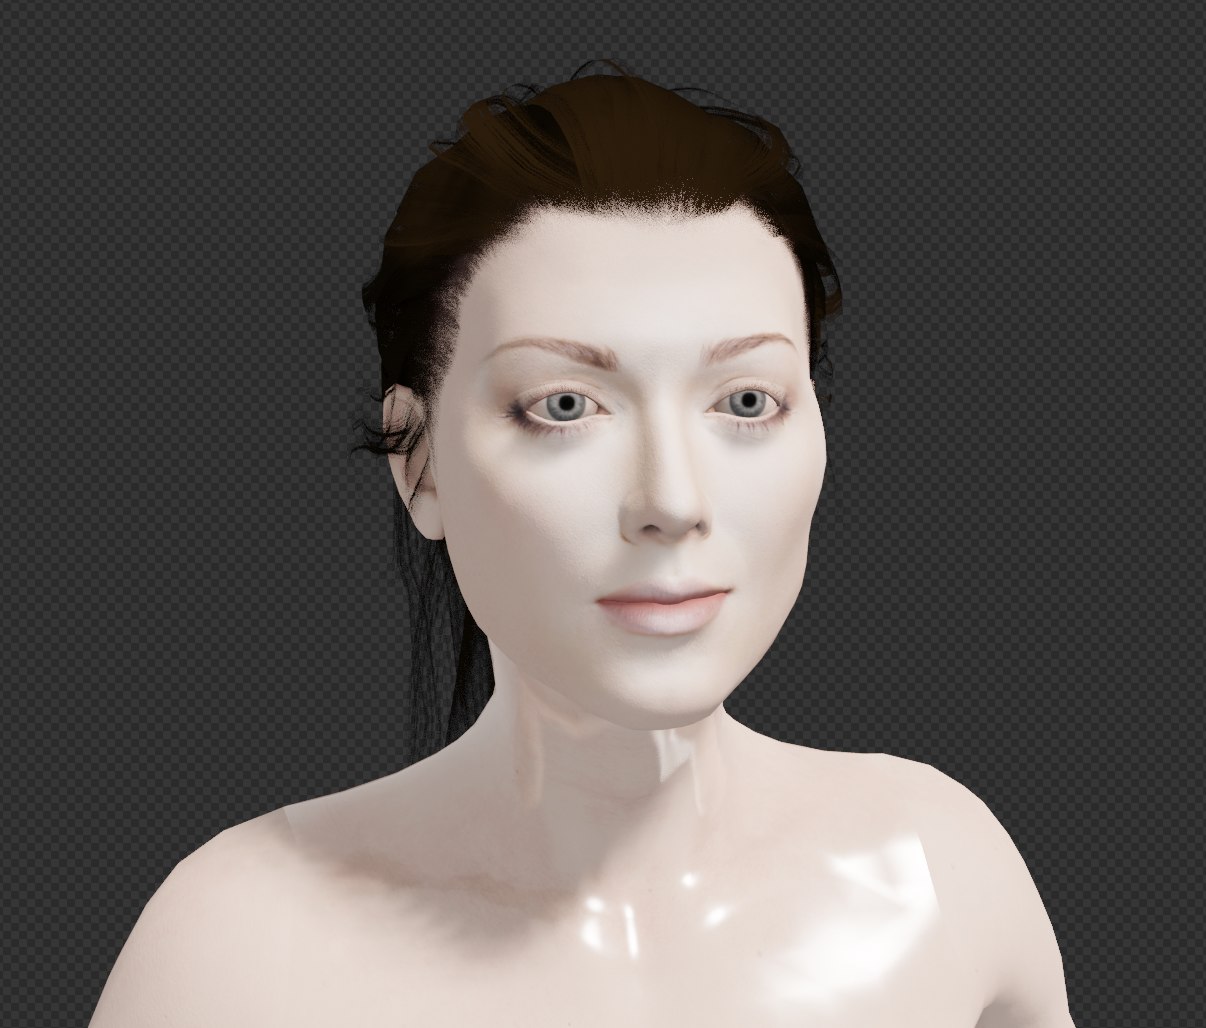 Female body face rig 3D TurboSquid 1561927